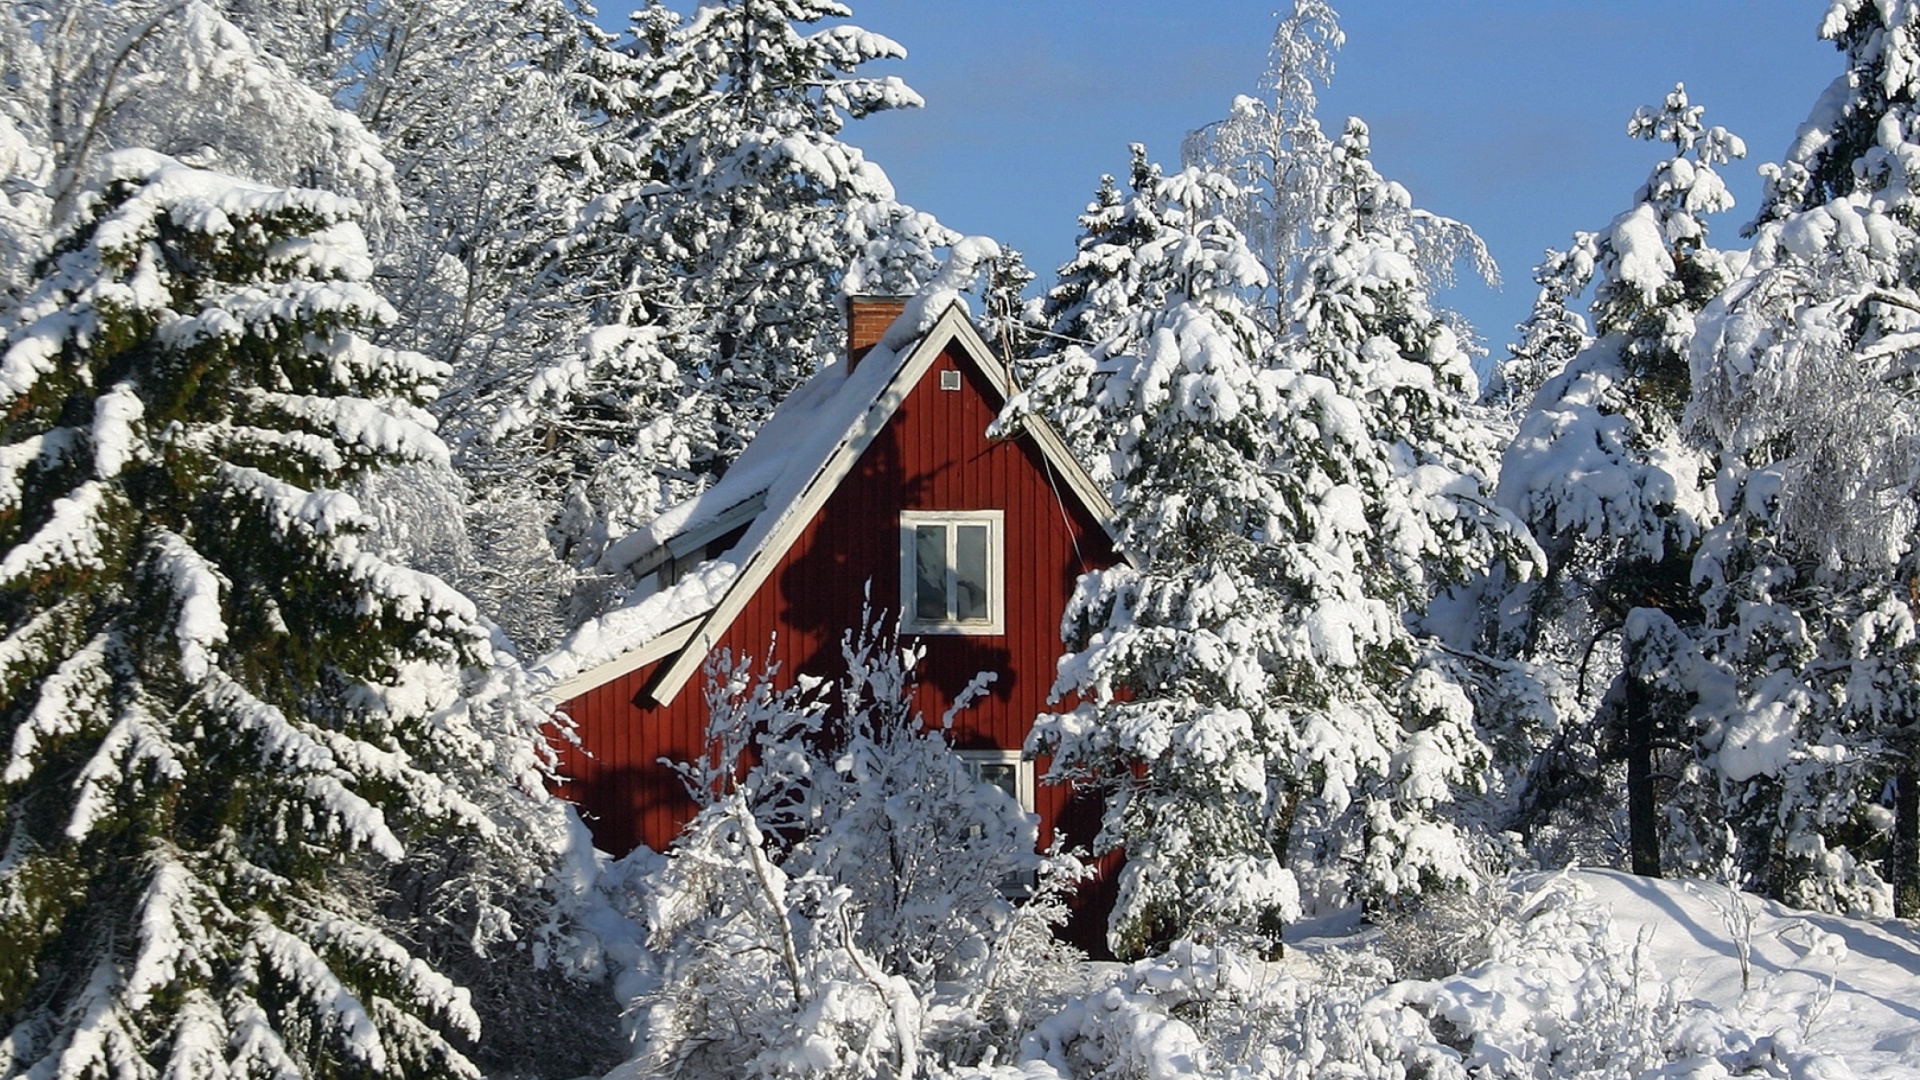 Обои Winter in Sweden 1920x1080